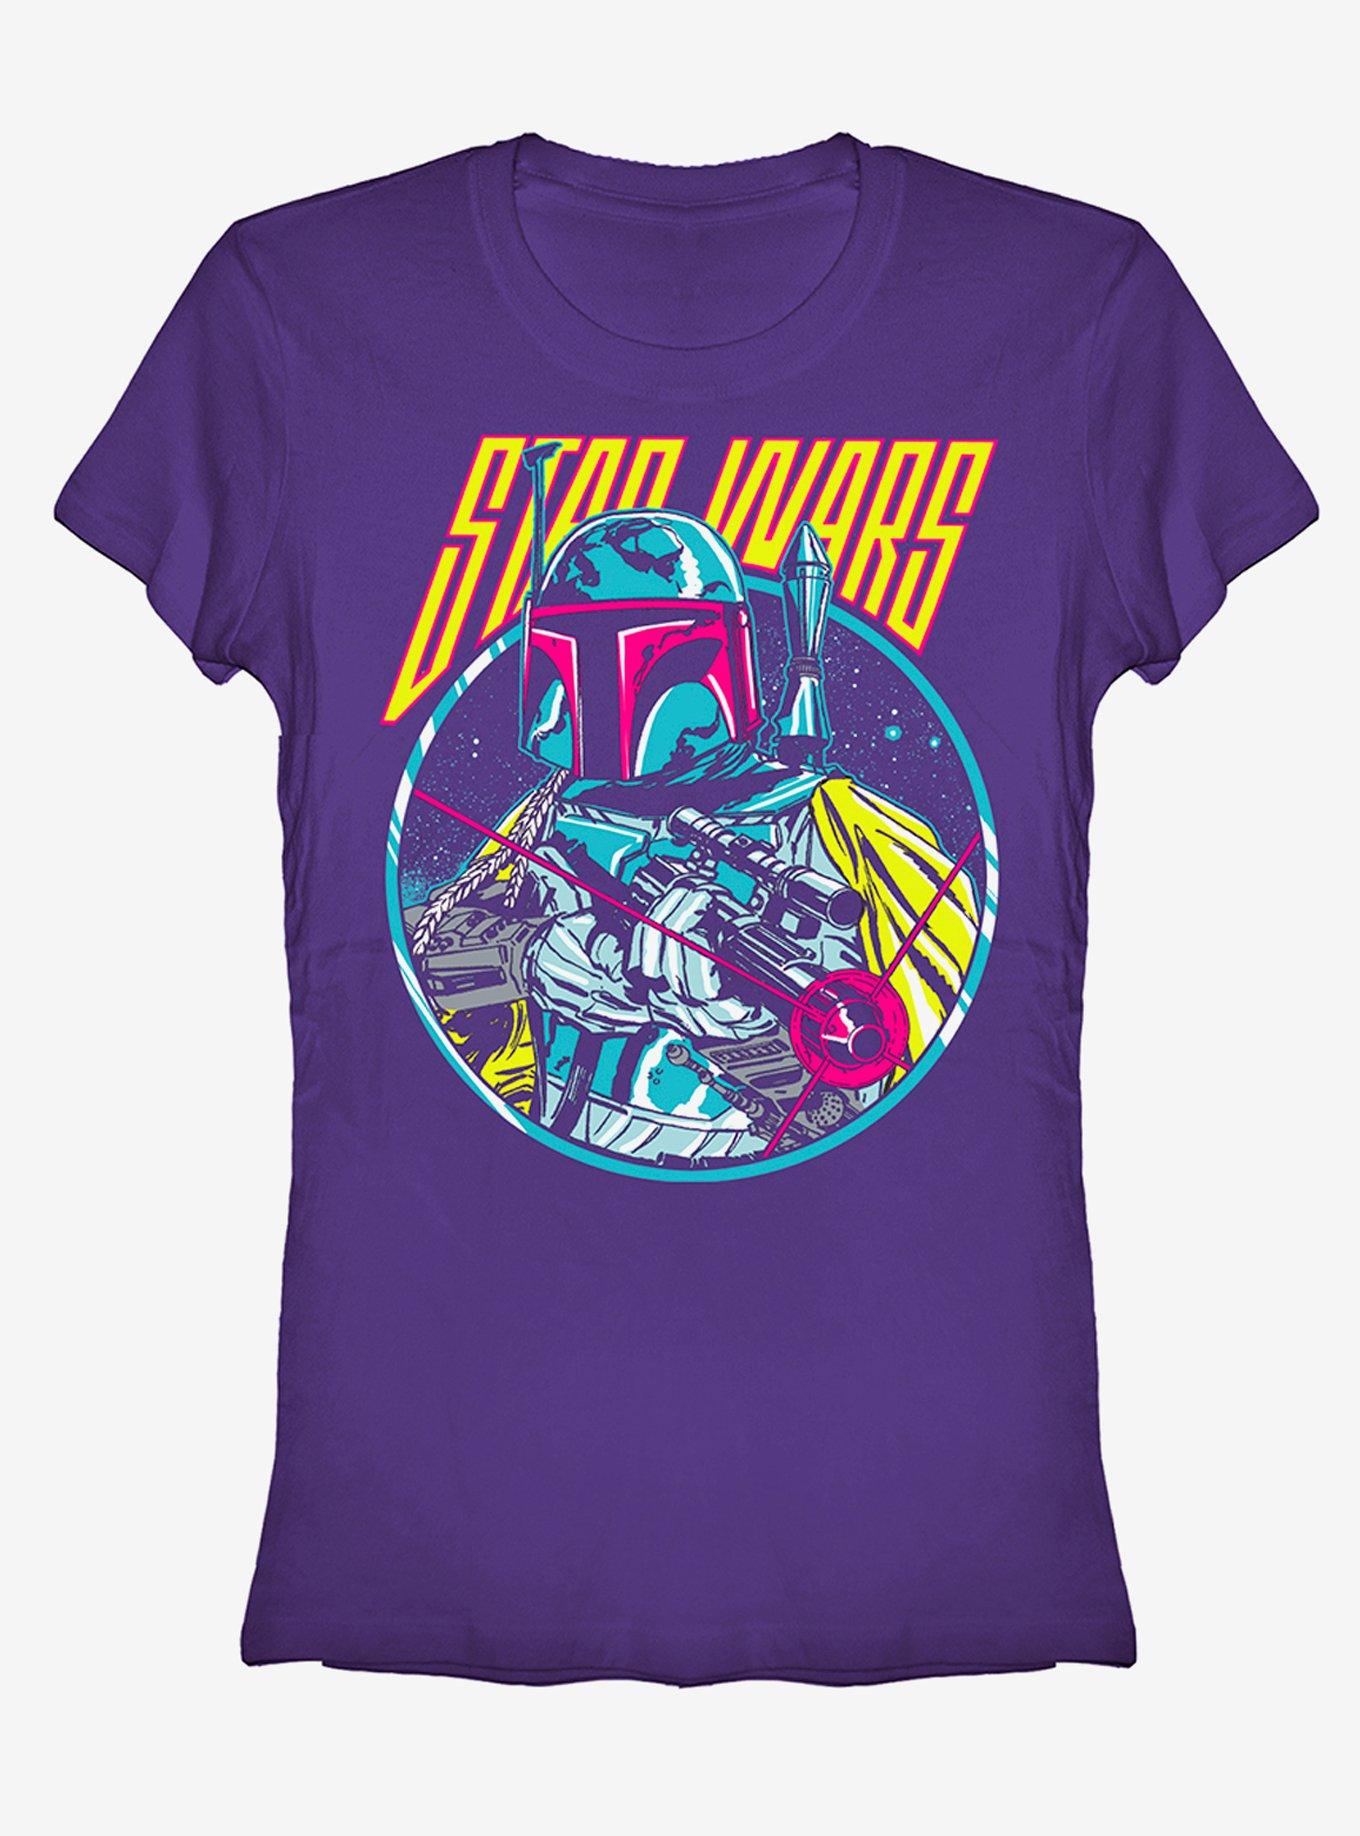 Star Wars Boba Fett Blaster Girls T-Shirt